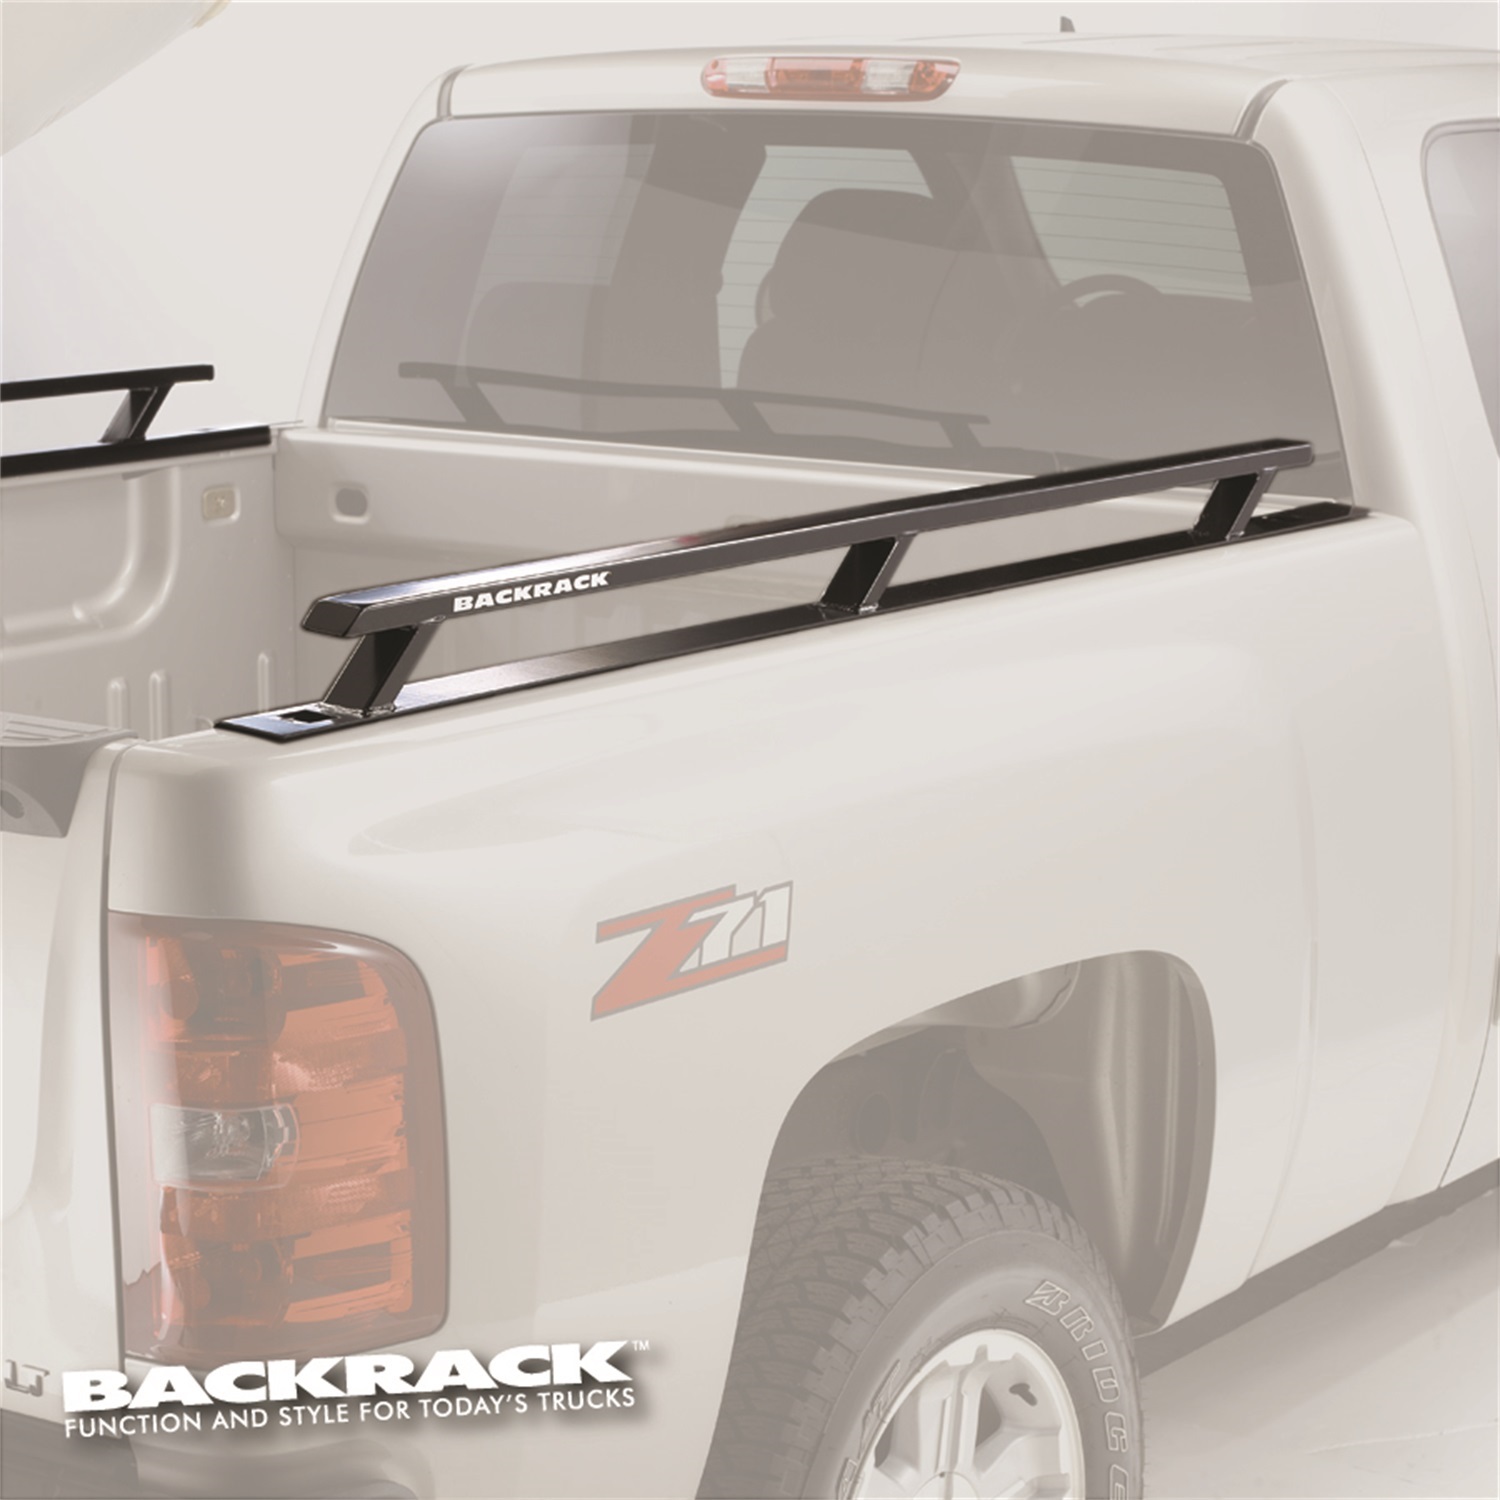 Backrack Backrack 65517 Side Rails Fits 02-14 1500 2500 3500 Ram 1500 Ram 2500 Ram 3500